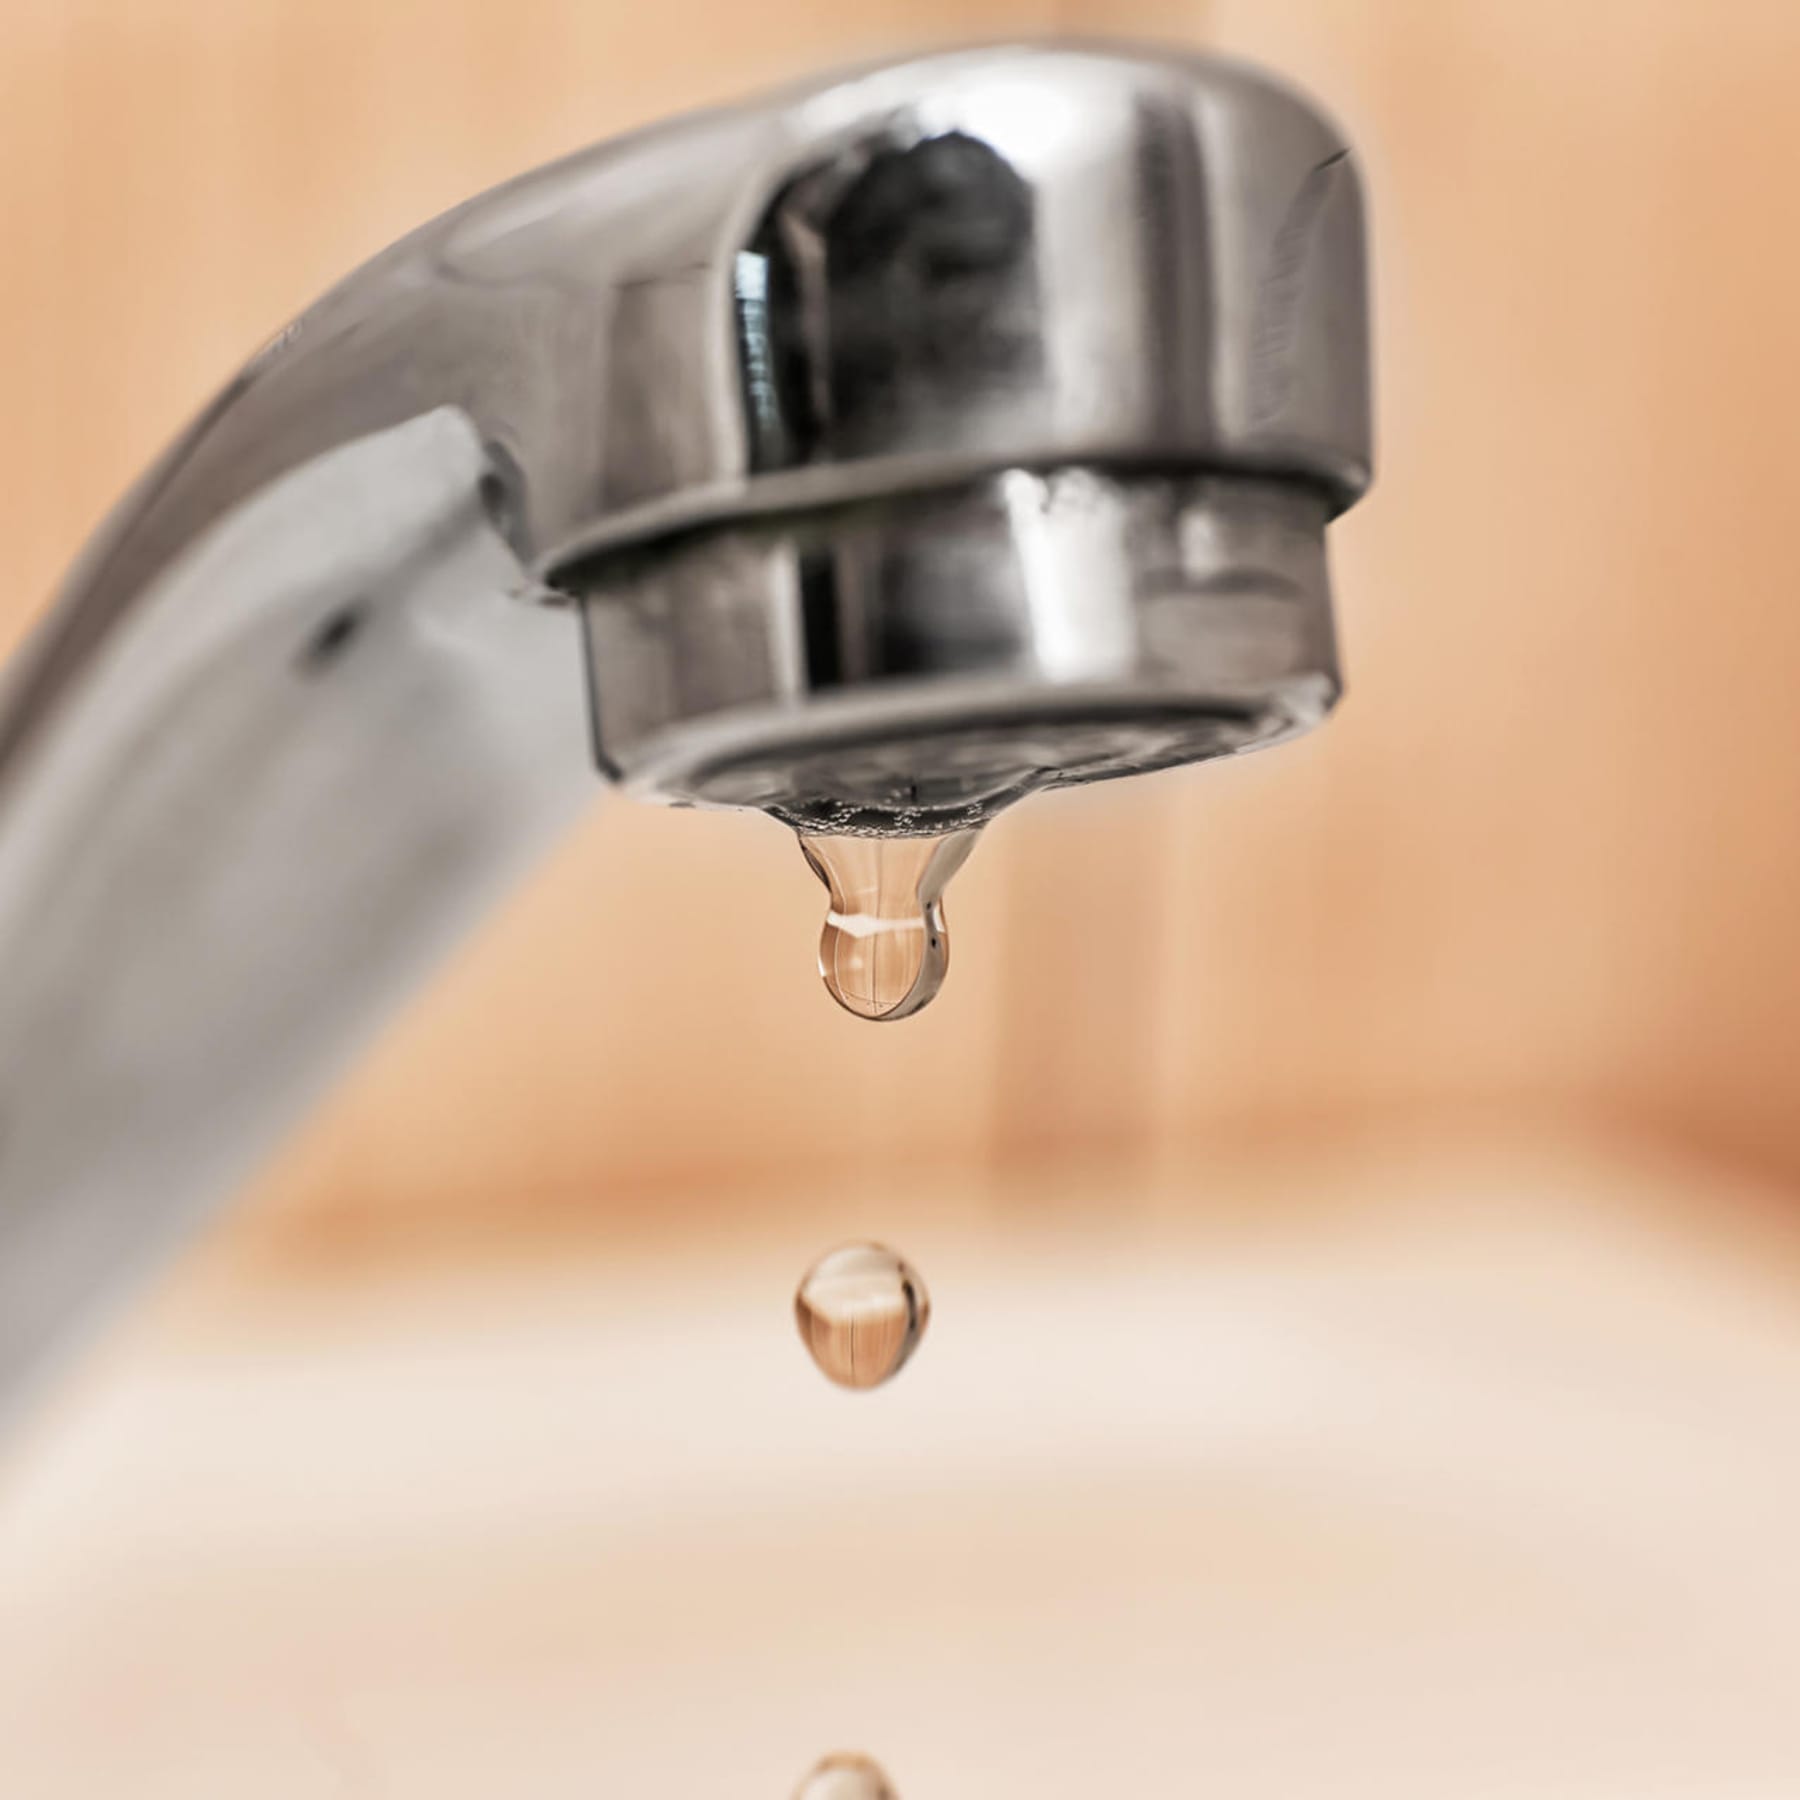 Wasserhahn reparieren: So stoppen Sie das lästige Tropfen in wenigen  Schritten